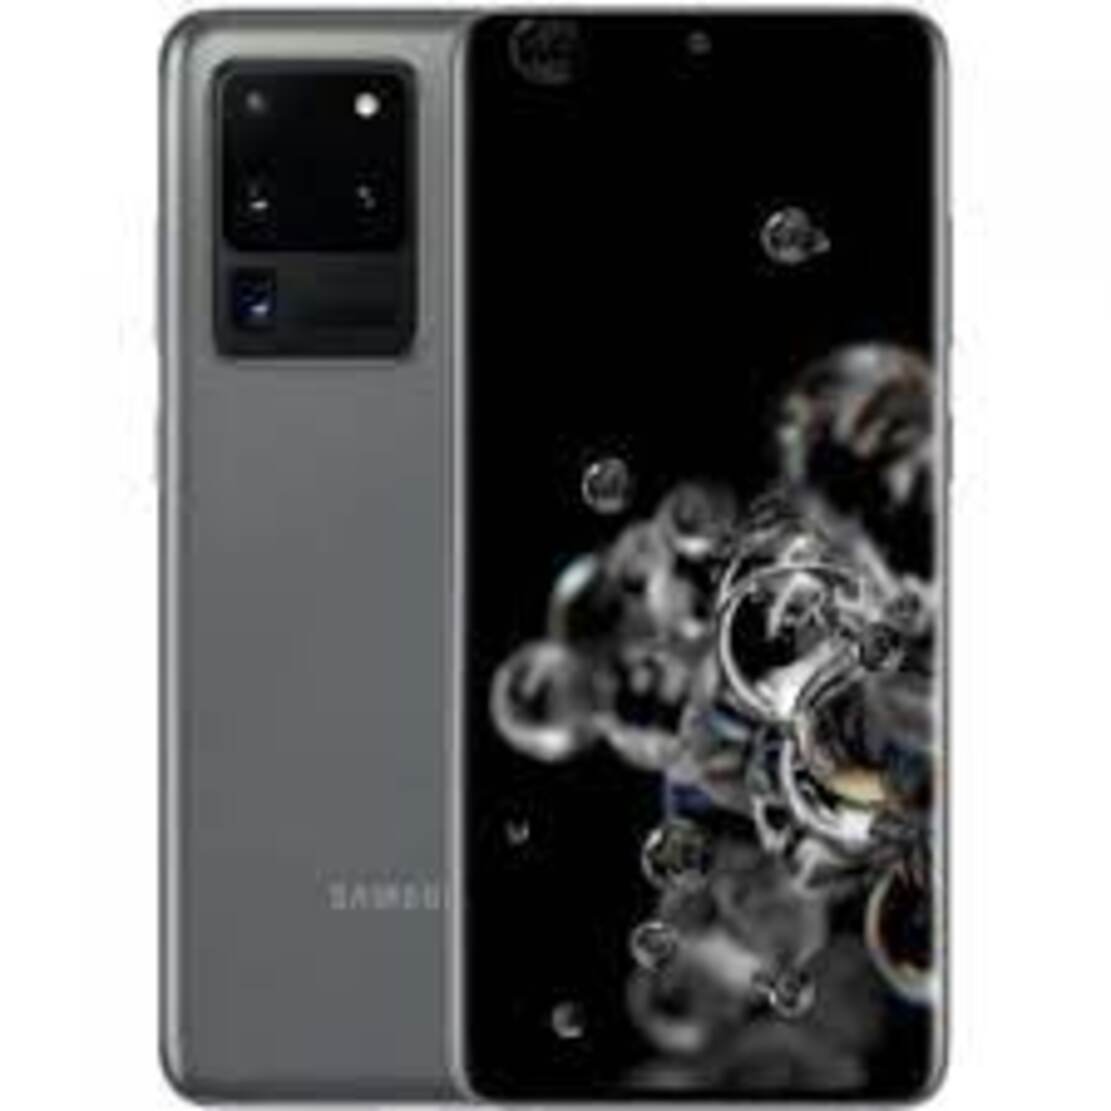 điện thoại Samsung Galaxy S20 Ultra 5G 2sim (1nano + 1esim) ram 12G/256G máy Chính Hãng, Màn hình: Dynamic AMOLED 2X6.9"Quad HD+ (2K+), Camera sau: 108 MP &48 MP, 12 MP, TOF 3D, Camera trước: 40 MP, Bảo hành 12 tháng